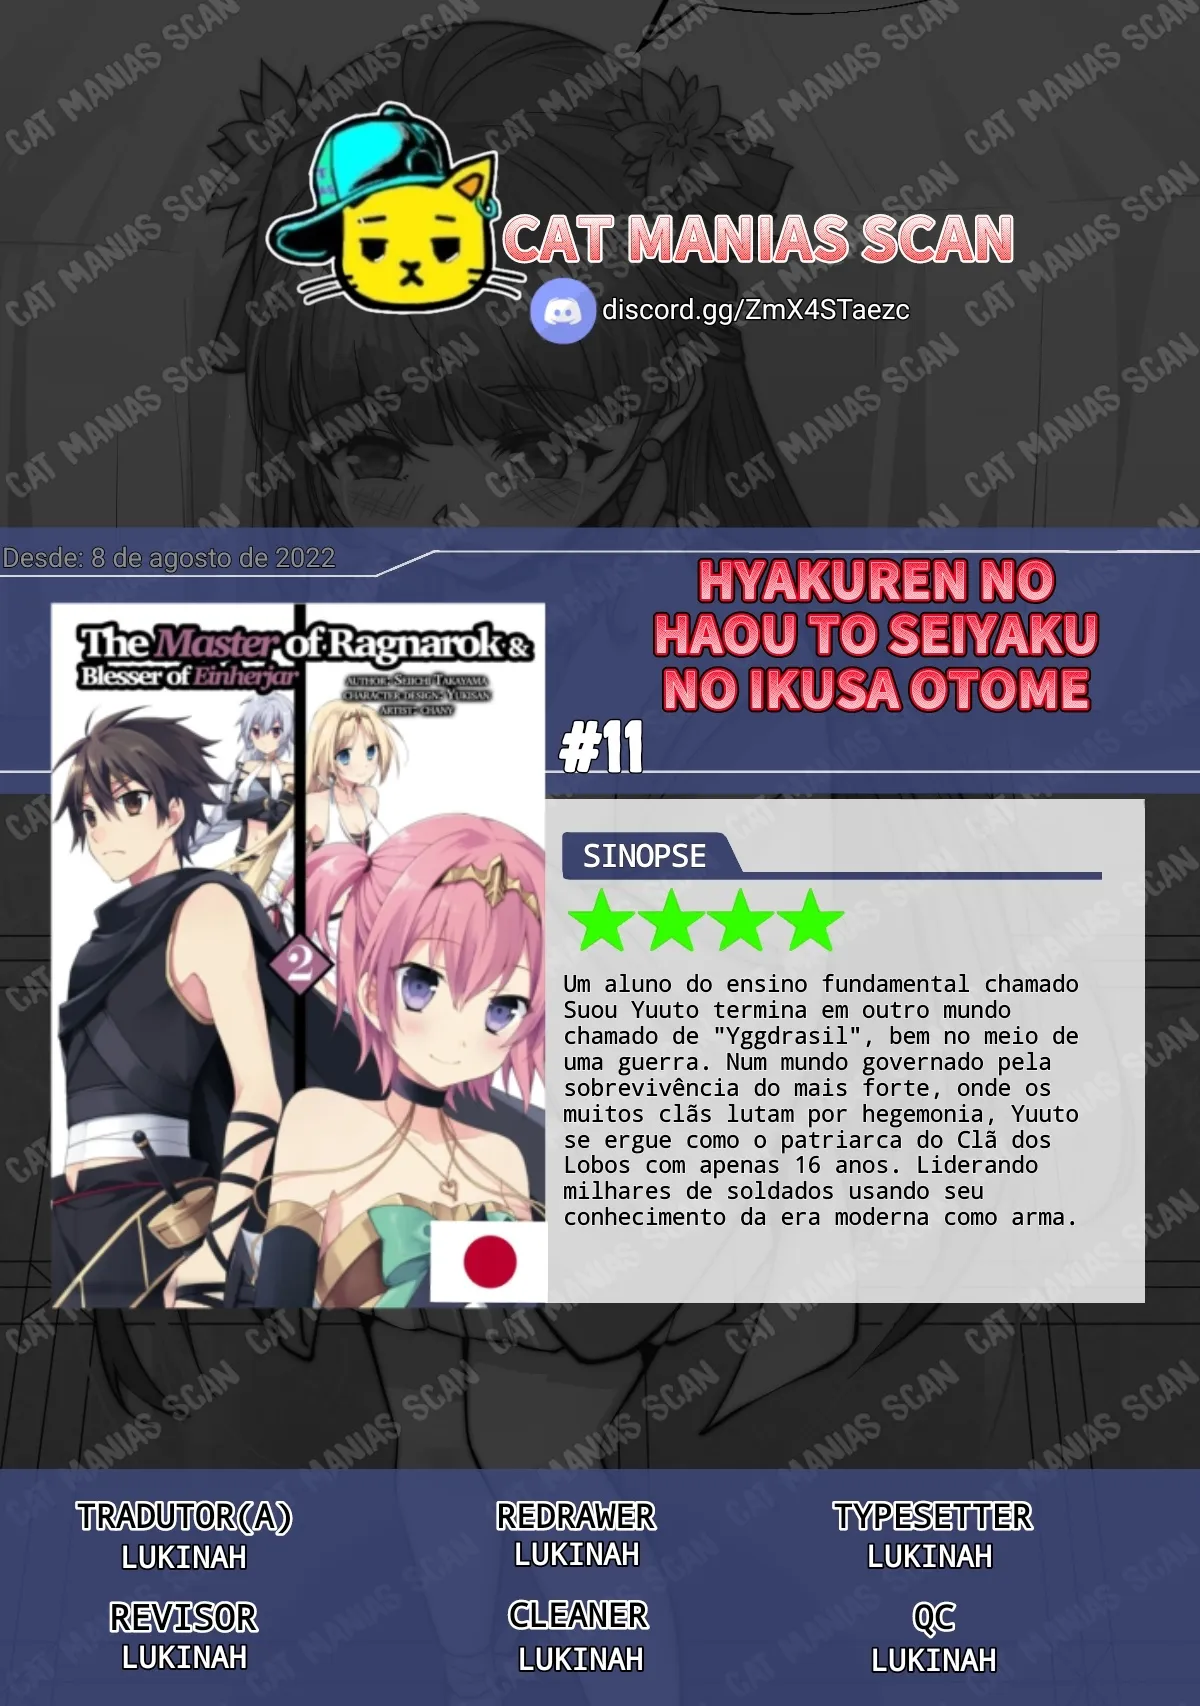 Hyakuren No Haou To Seiyaku No Valkyria - Animes Online